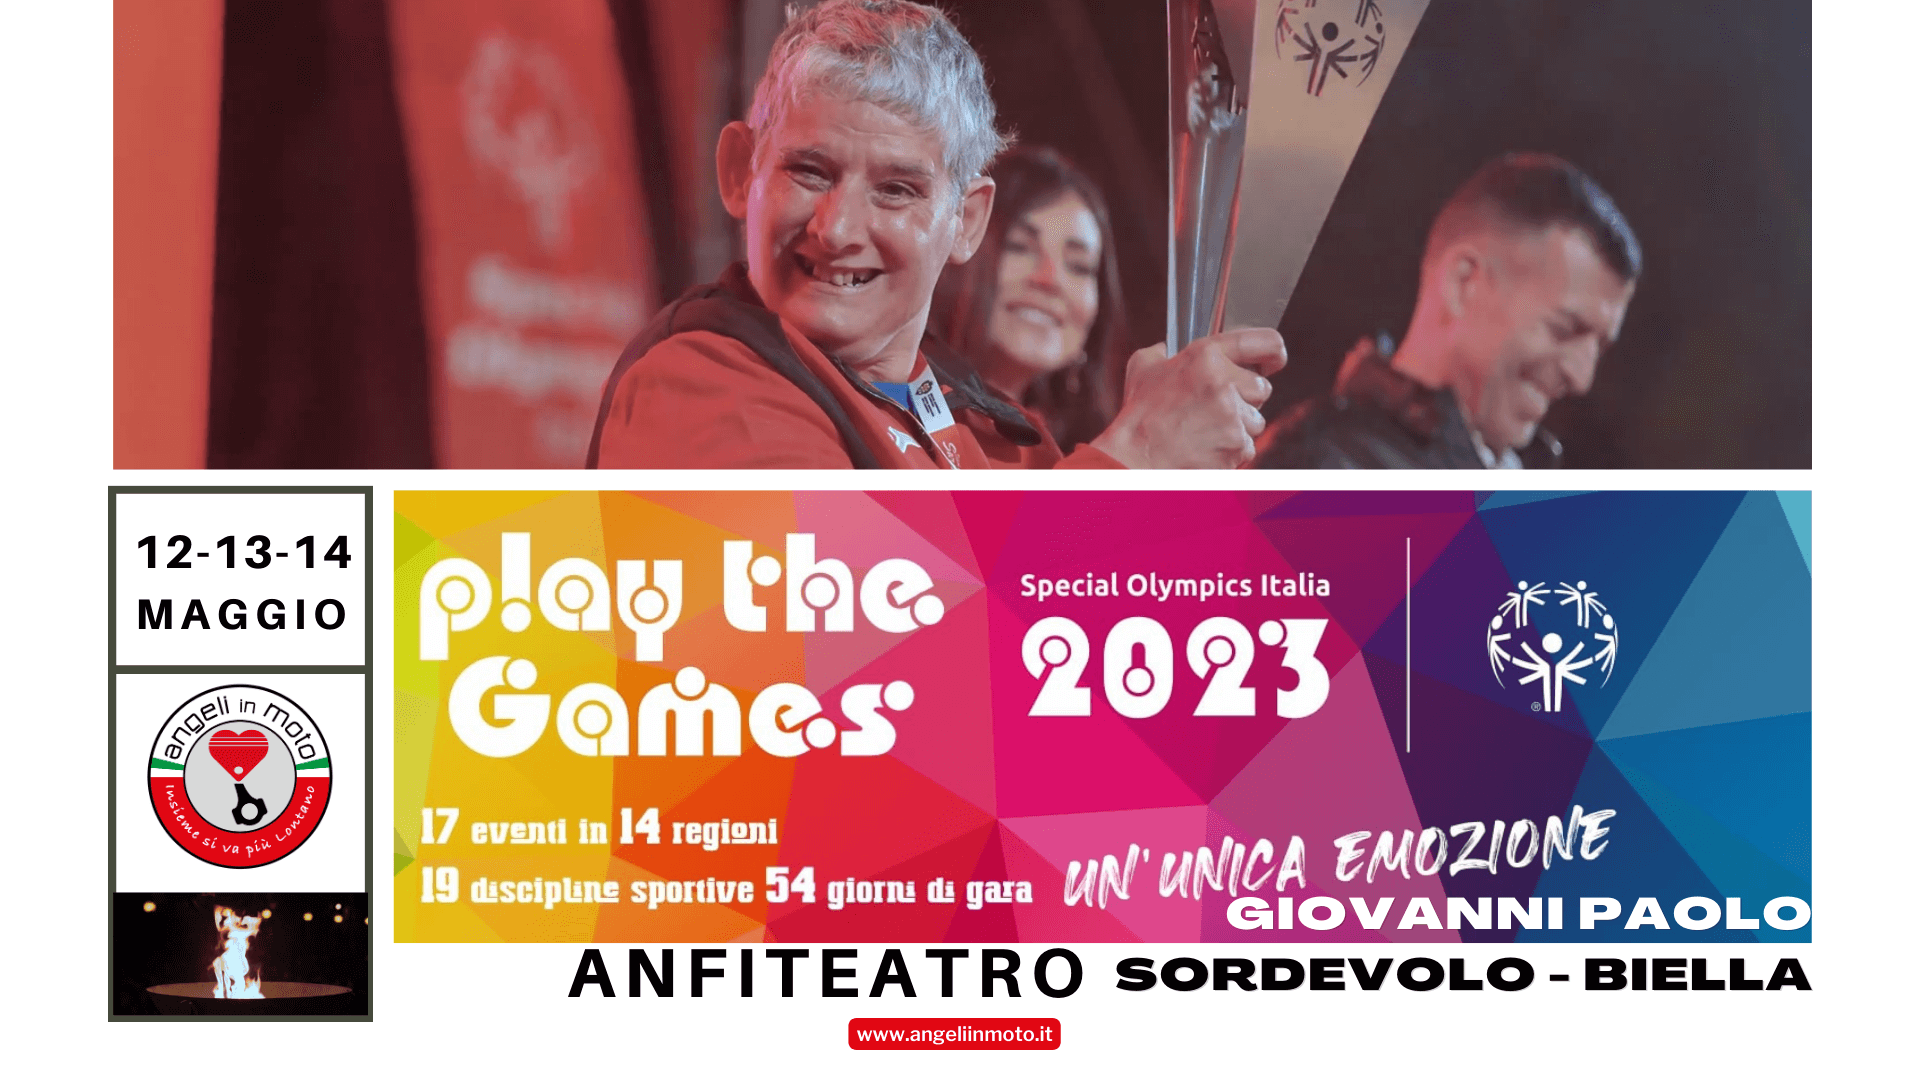 Un riconoscimento speciale: Angeli in Moto invitati ai Play the Games 2023 di Special Olympics